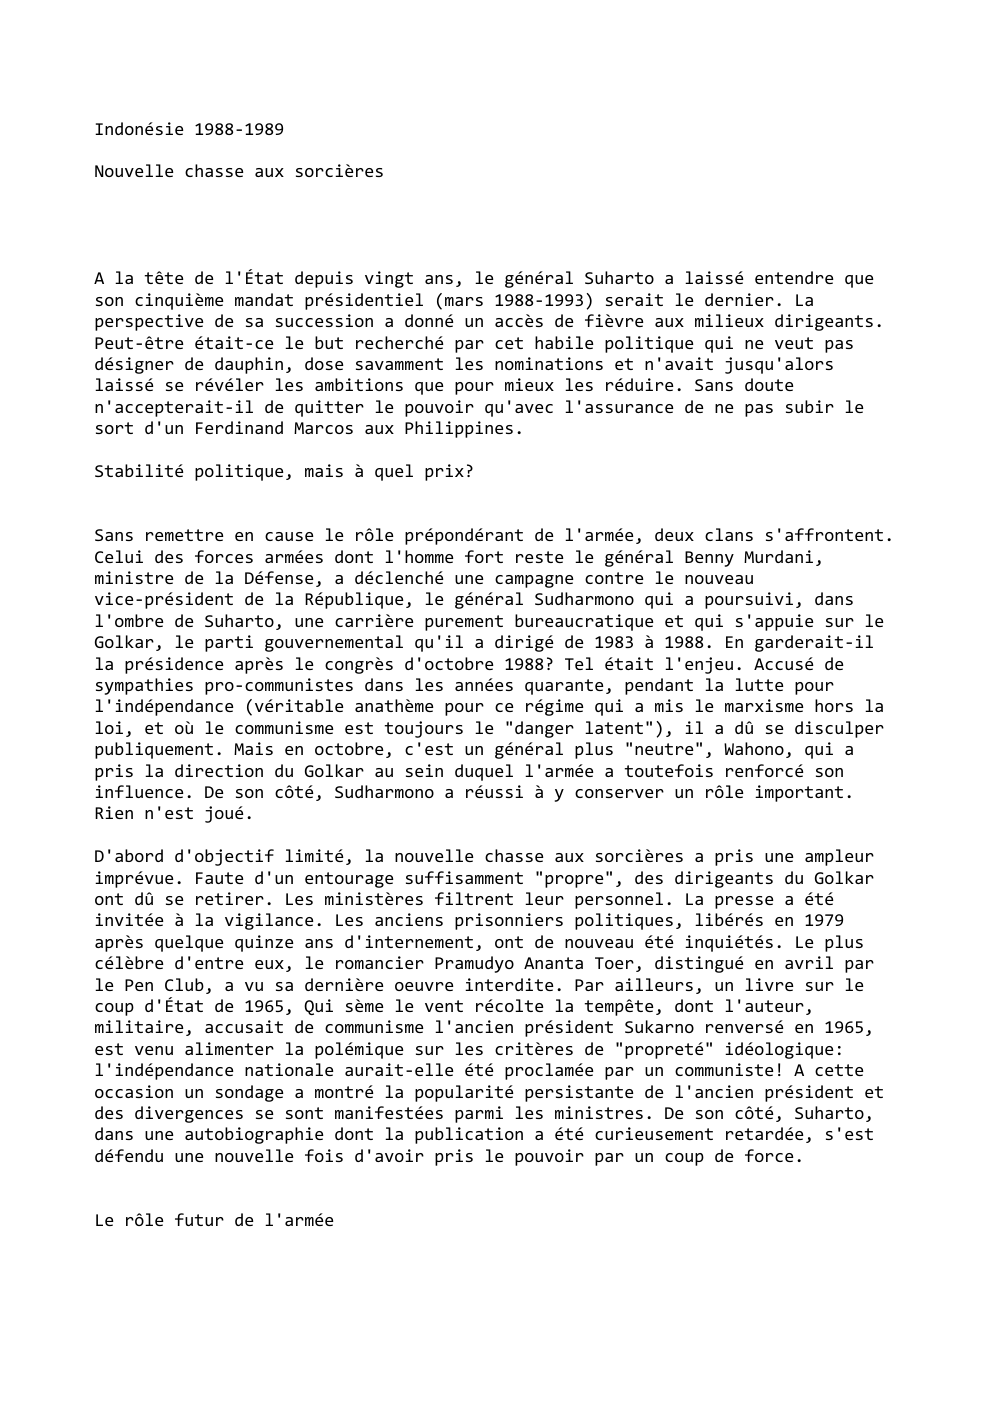 Prévisualisation du document Indonésie 1988-1989
Nouvelle chasse aux sorcières

A la tête de l'État depuis vingt ans, le général Suharto a laissé entendre...